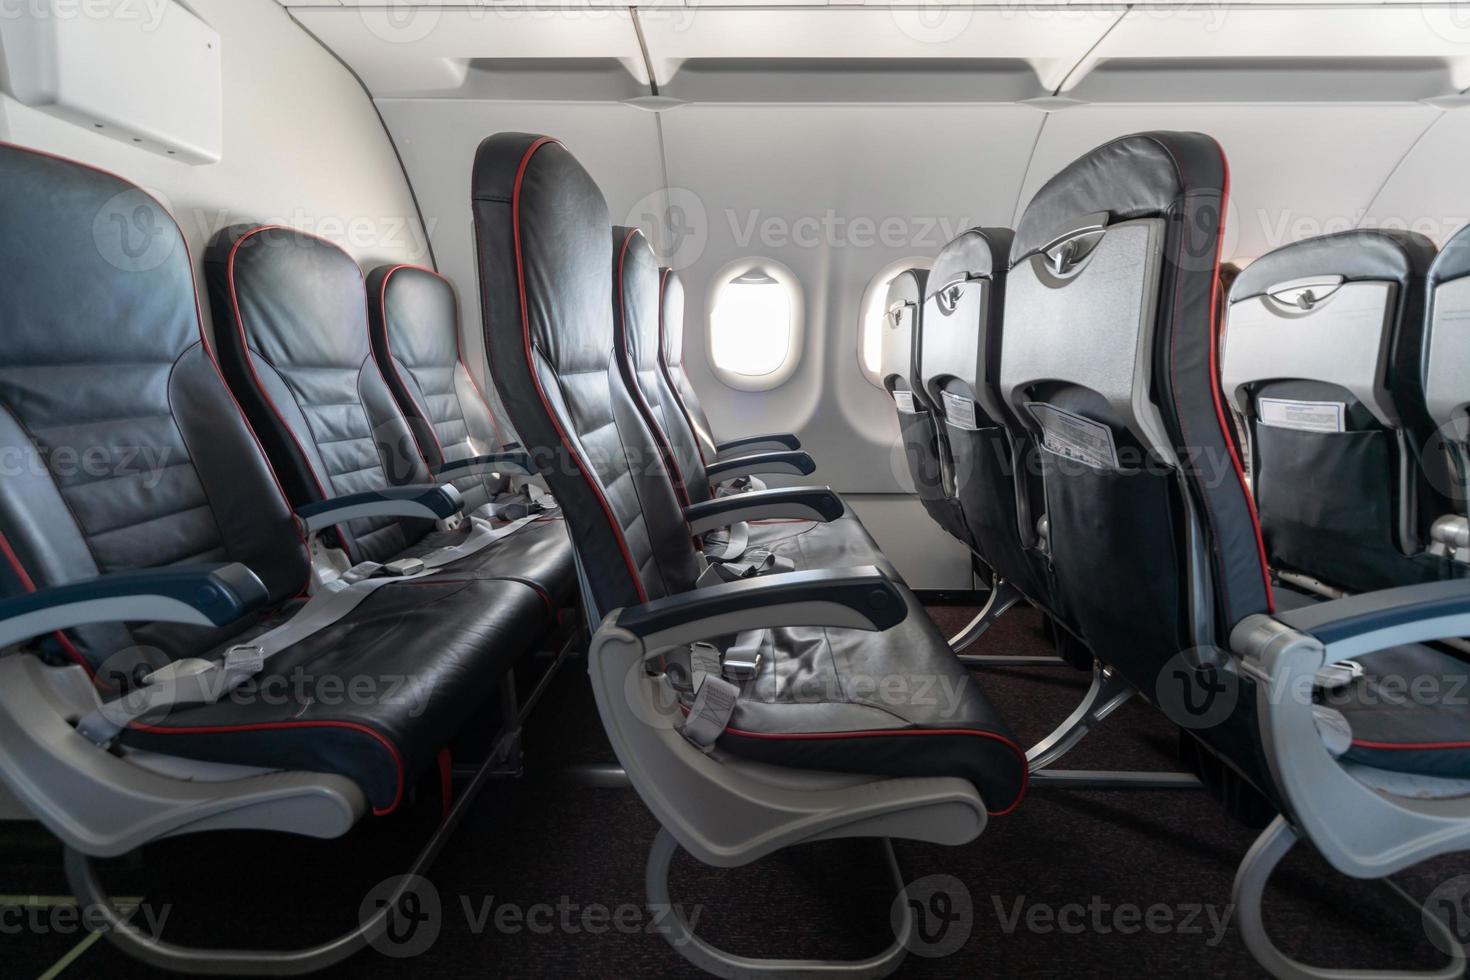 Flugzeugsitze und Fenster. Bequeme Sitze der Economy-Klasse ohne Passagiere. neue Low-Cost-Airline foto